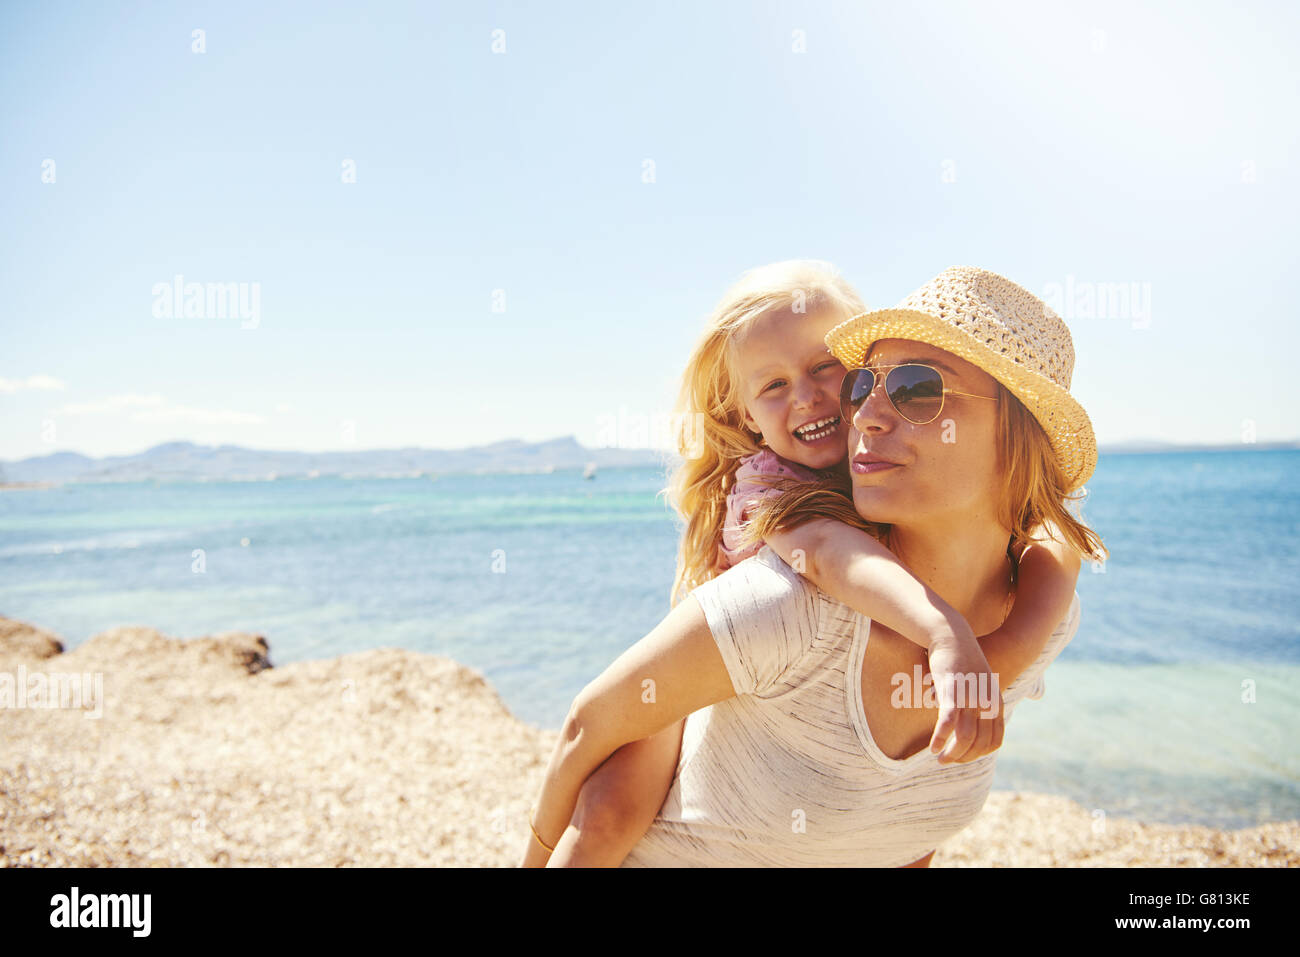 Lachend temperamentvoll wenig blondes Mädchen mit ihrer Mutter am Strand Reiten auf ihr im Huckepack auf einem felsigen Ufer, Ozean Hintergrund Stockfoto